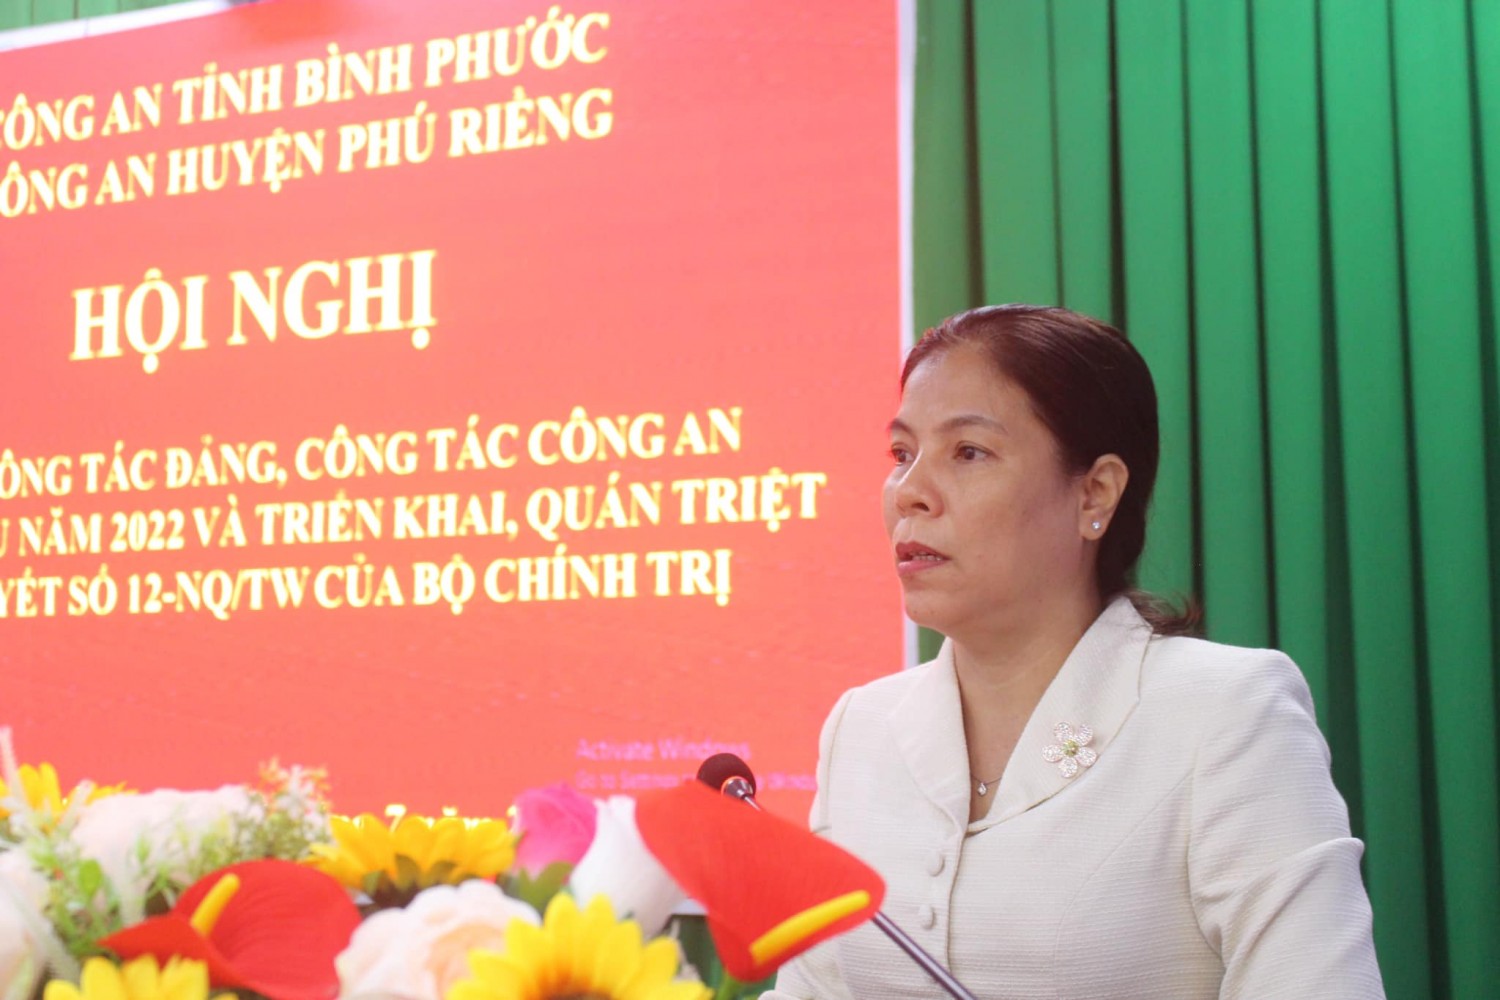 Công an huyện Phú Riềng sơ kết công tác Đảng, công tác công an 6 tháng đầu năm 2022